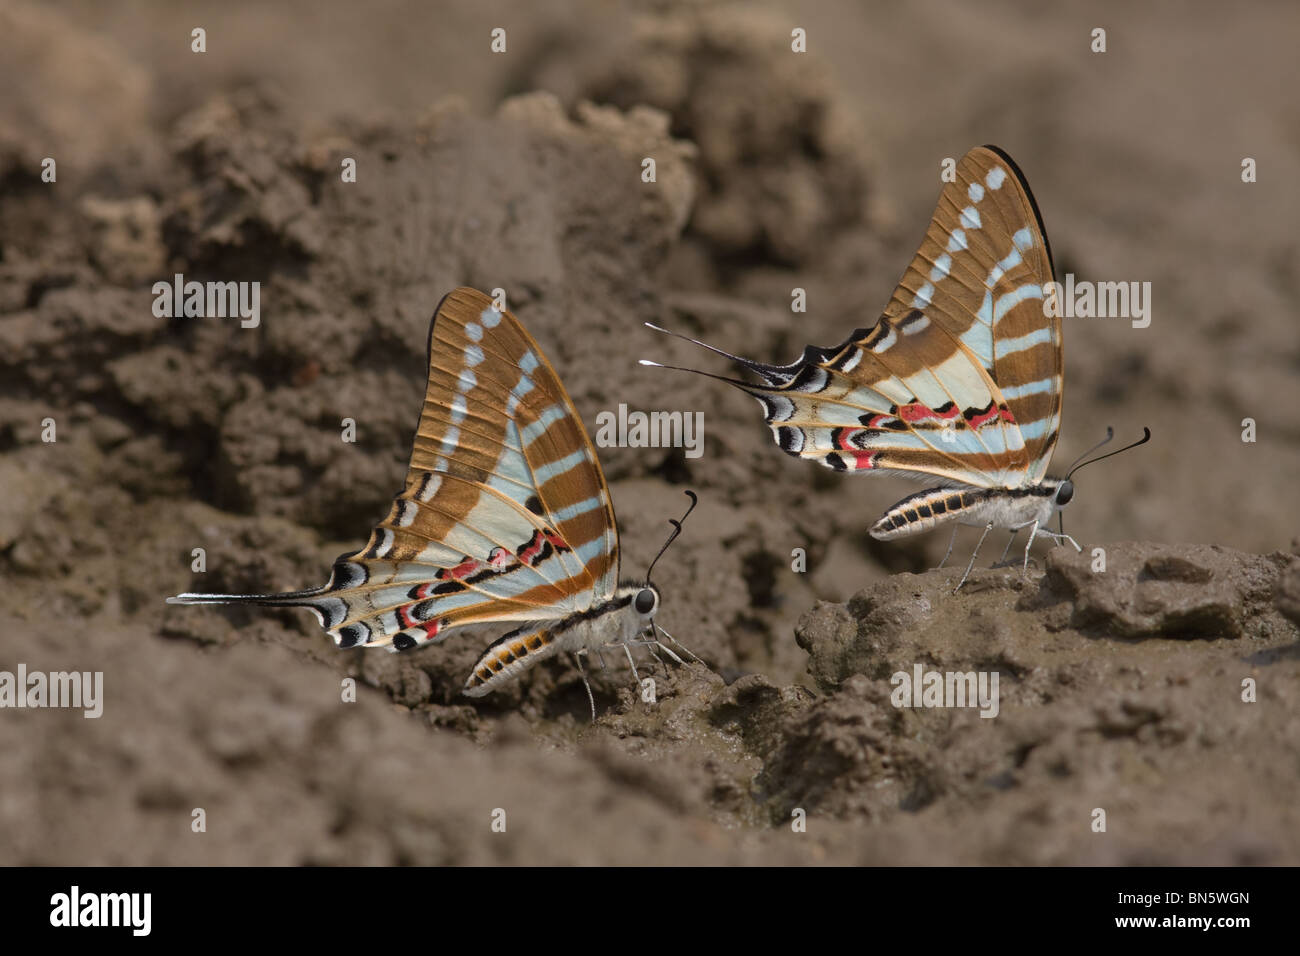 Vor Ort Swordtails (Schmetterlinge) sitzen auf dem Boden und Schlamm-Puddel - ein hohen Kontrast Bild Stockfoto